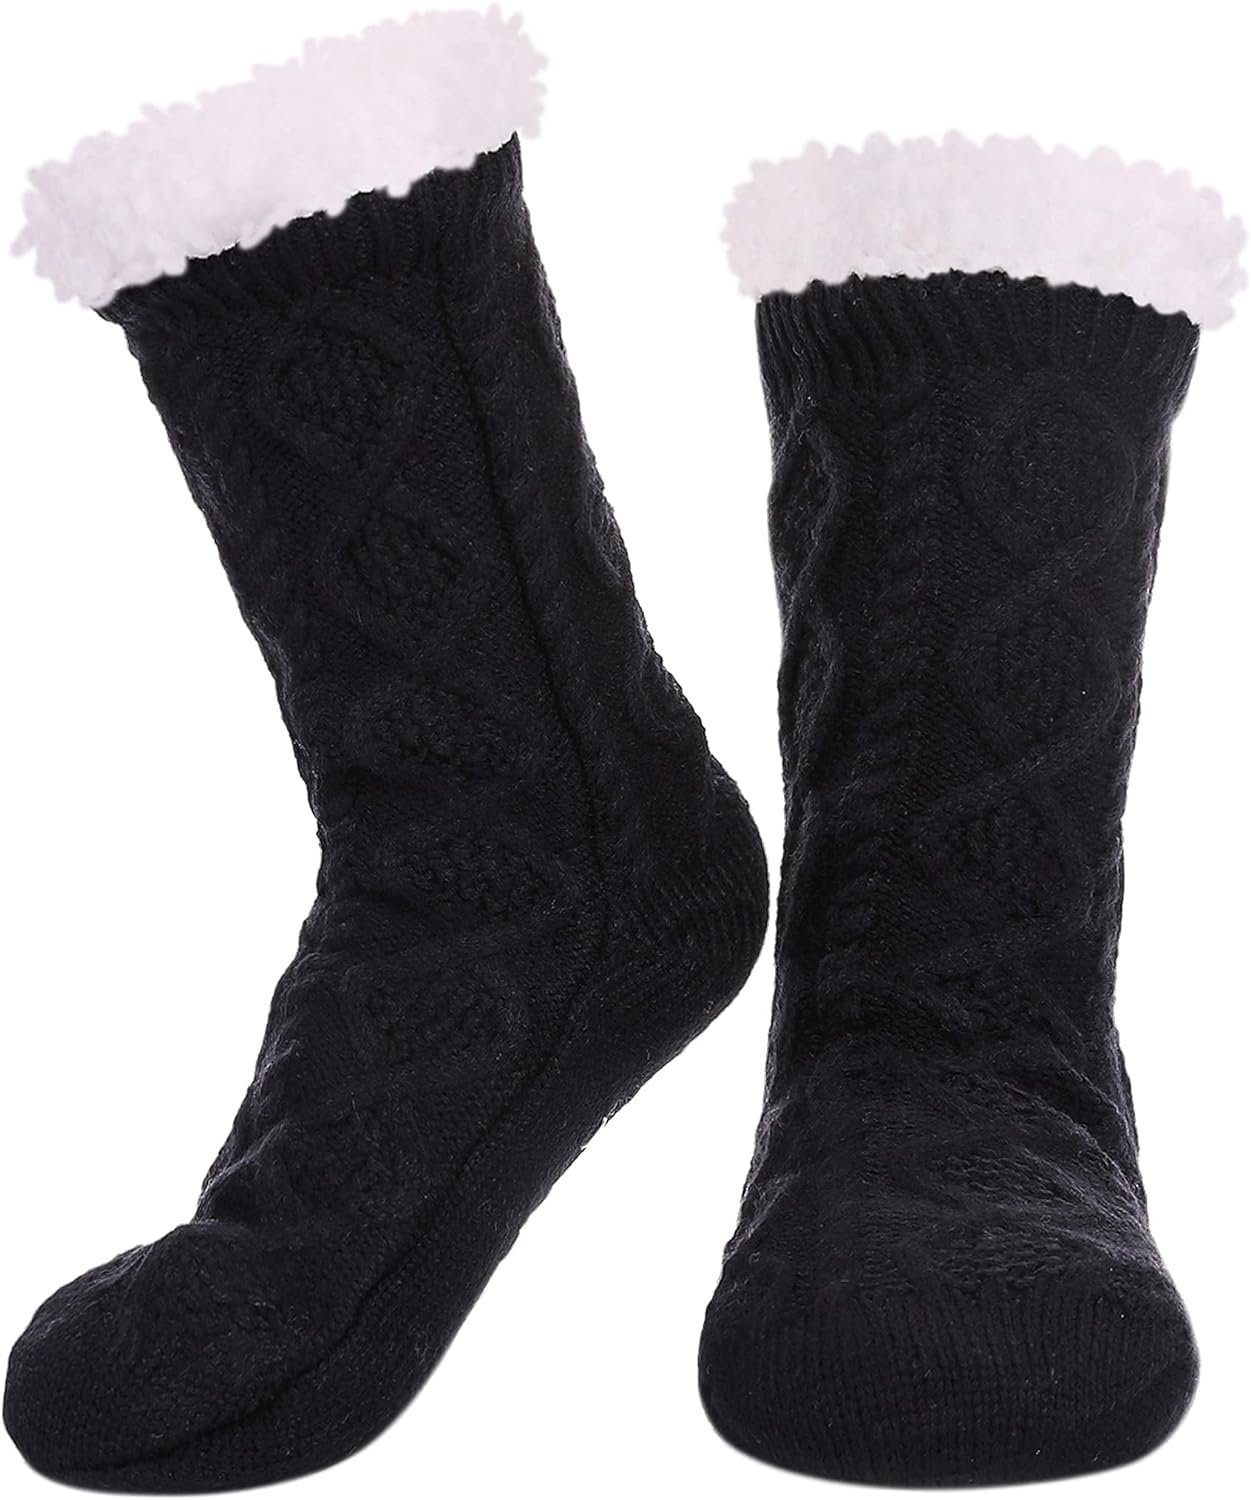 Alster  Herz Alster Herz ABS-Socken Kuschelsocken mit ABS Sohle, Schuhgröße 35-41, A0221 Haussocken für Winter Schwarz